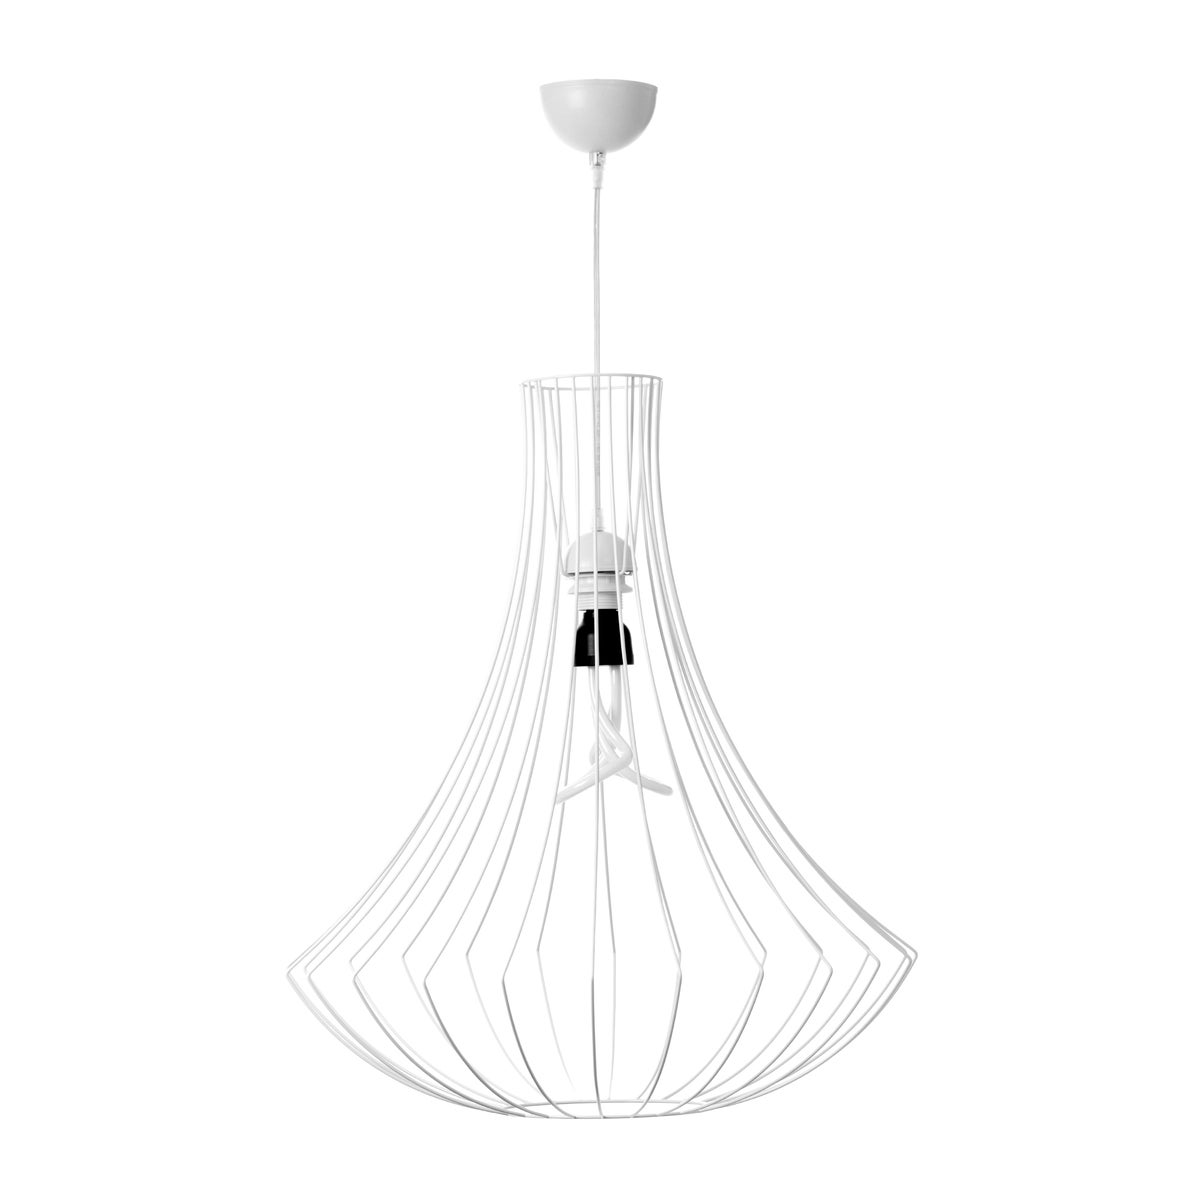 Moderne skandinavische Designlampe Hängelampe in Weiß 60 cm | Wohnzimmer Esszimmer Leuchte